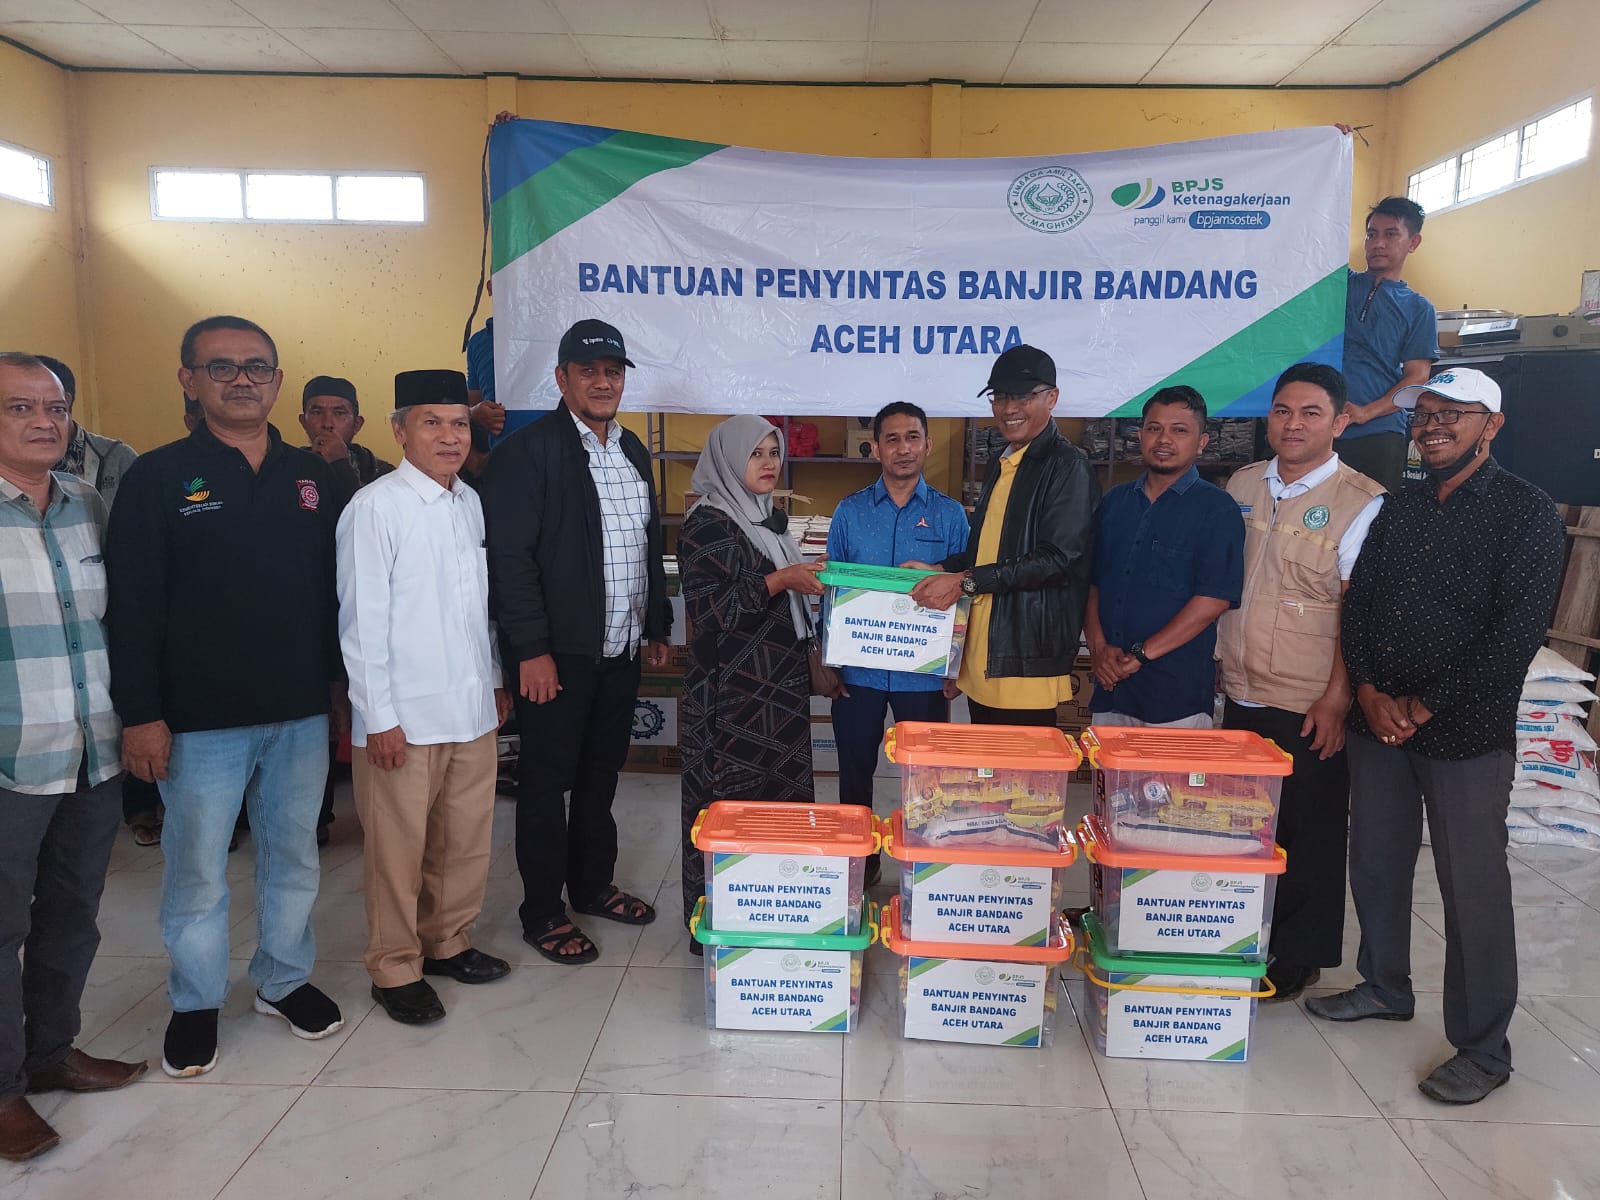 LAZ Al-Maghfirah BPJS Ketenagakerjaan Bantu Penyintas Banjir Aceh Utara